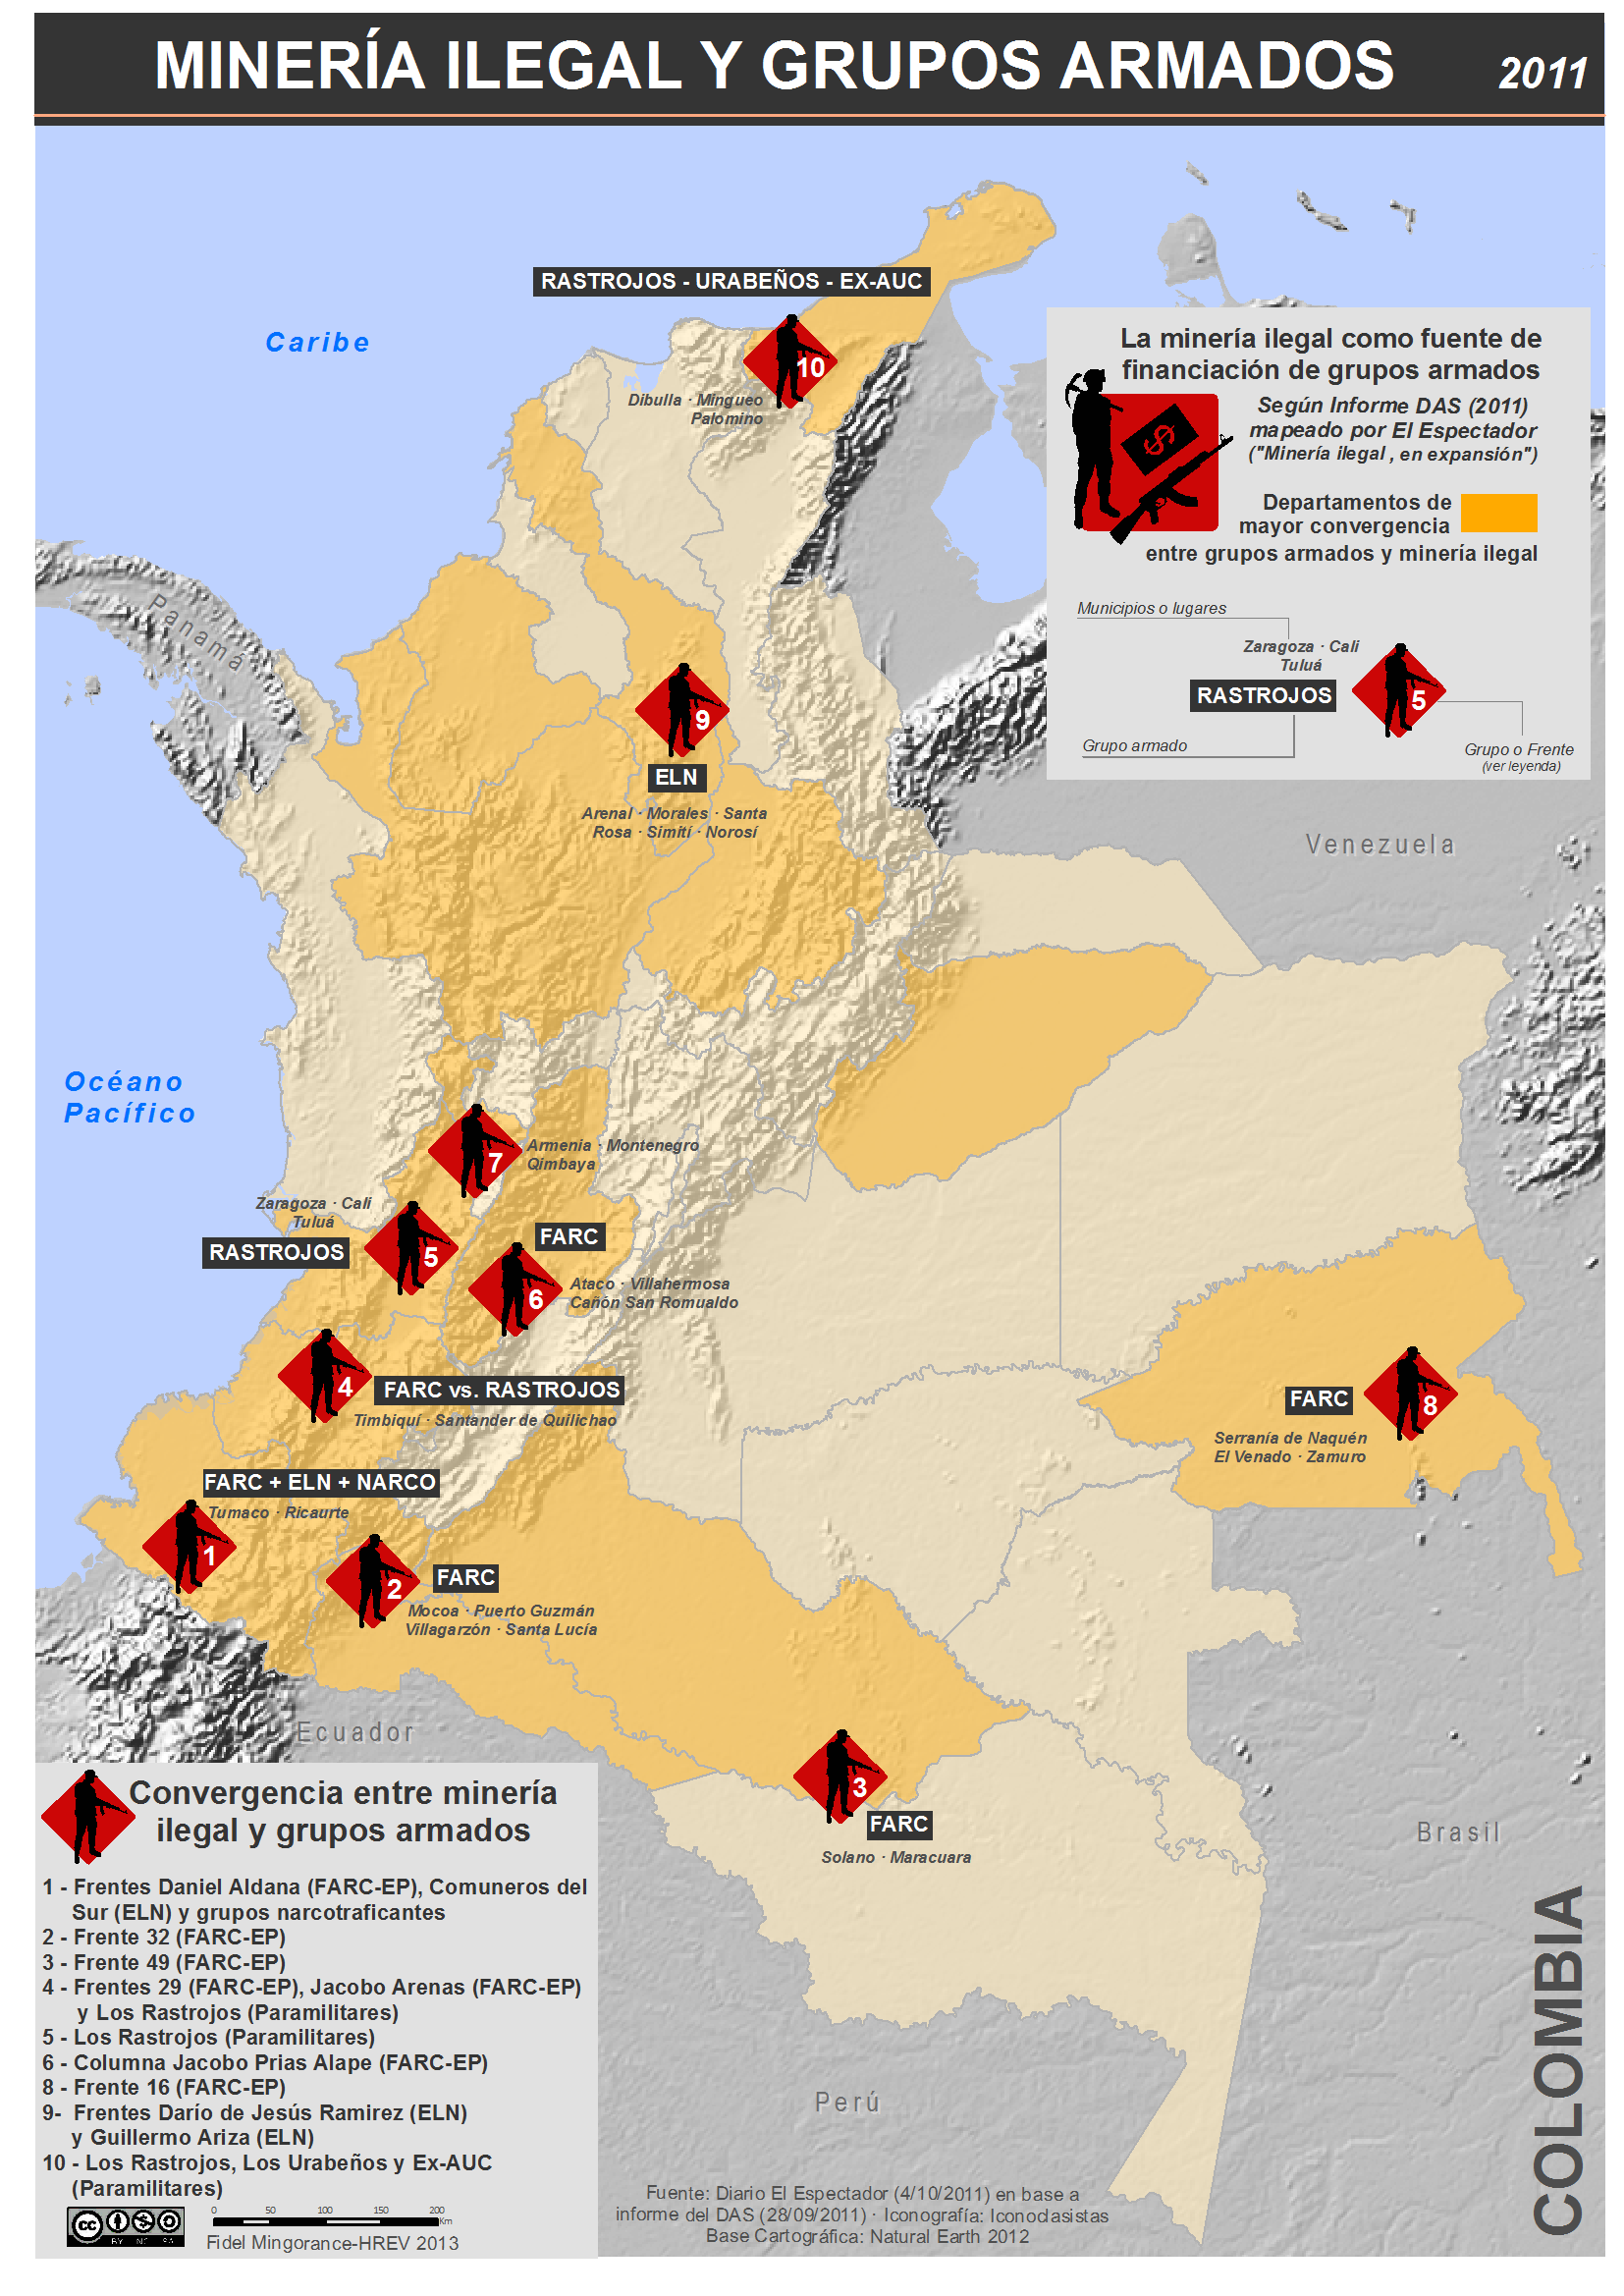 Minería ilegal y grupos armados ilegales en Colombia (2011)